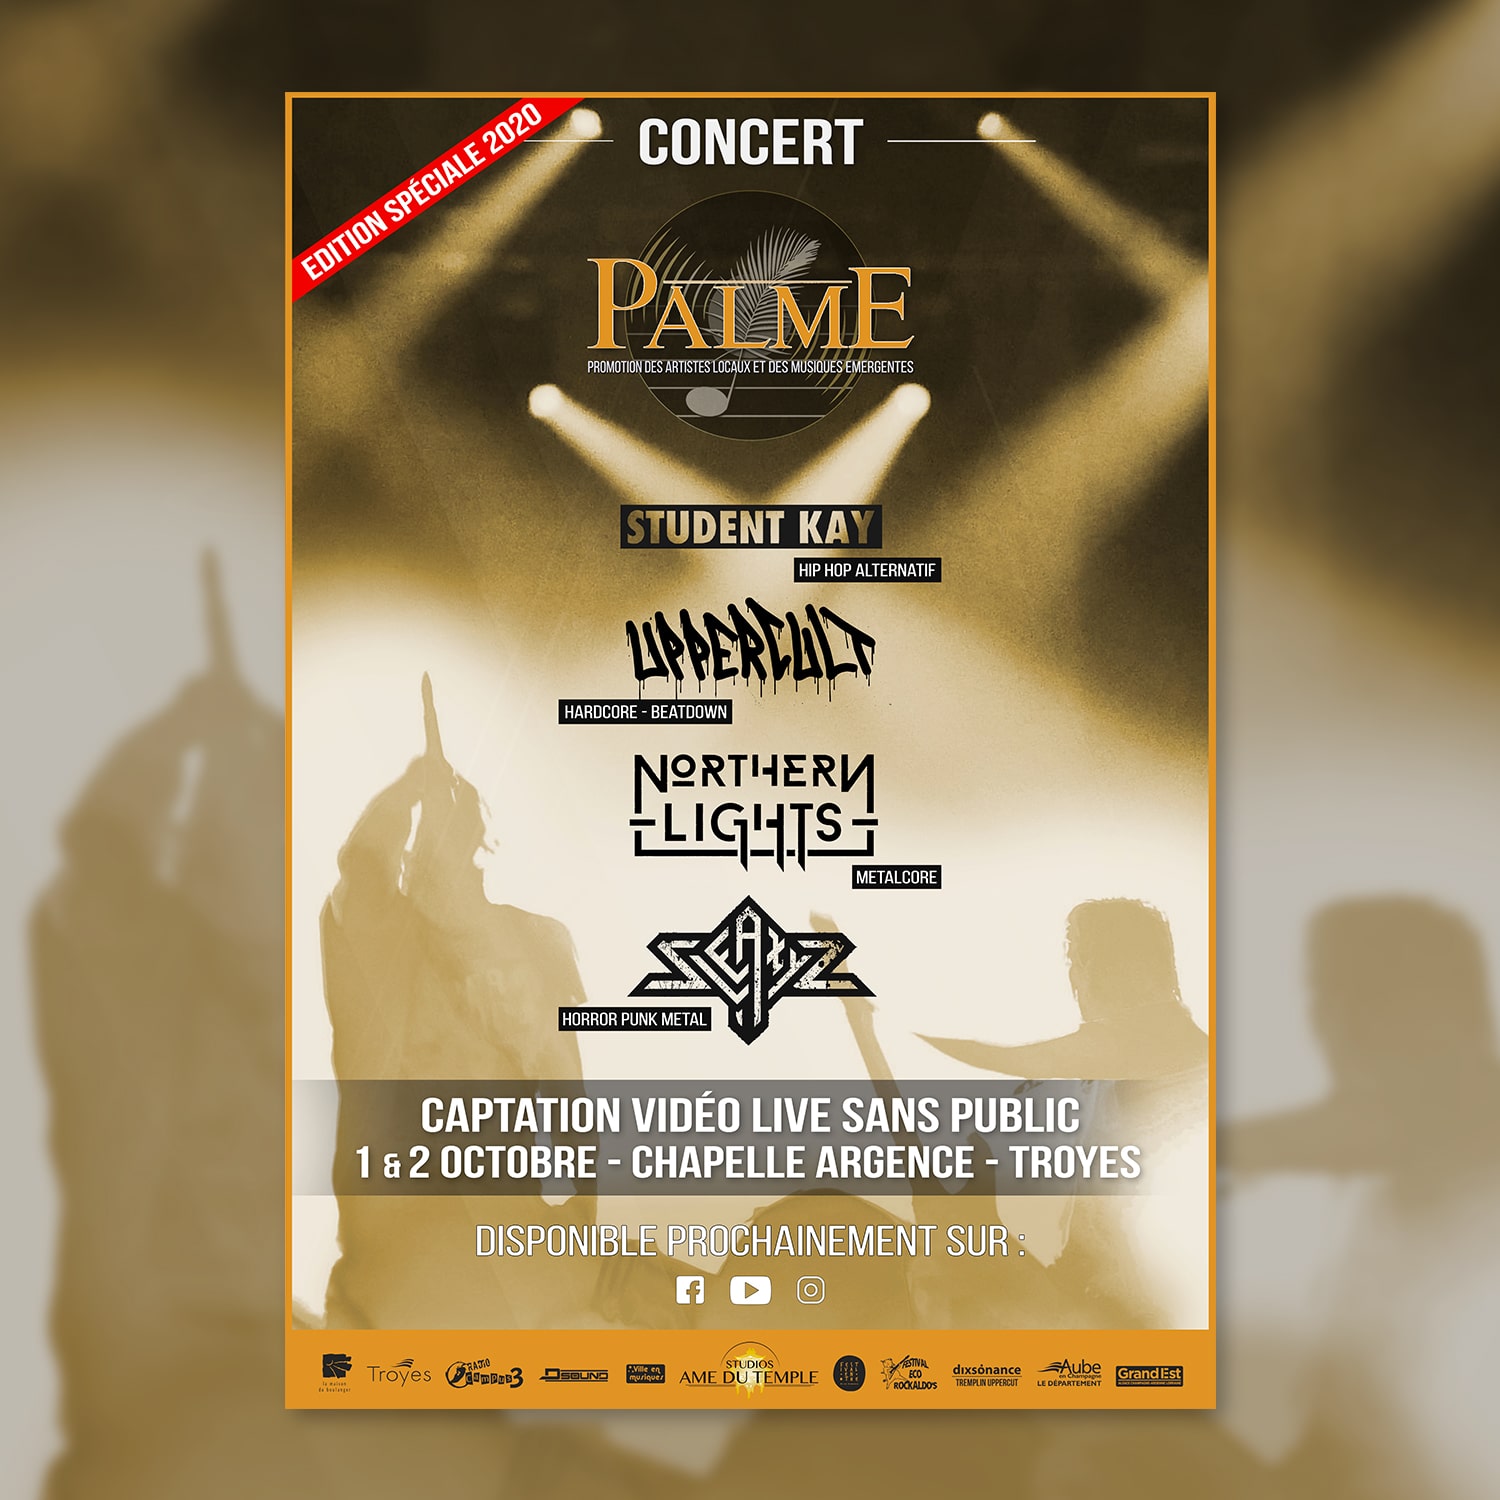 Concert Palme 2020